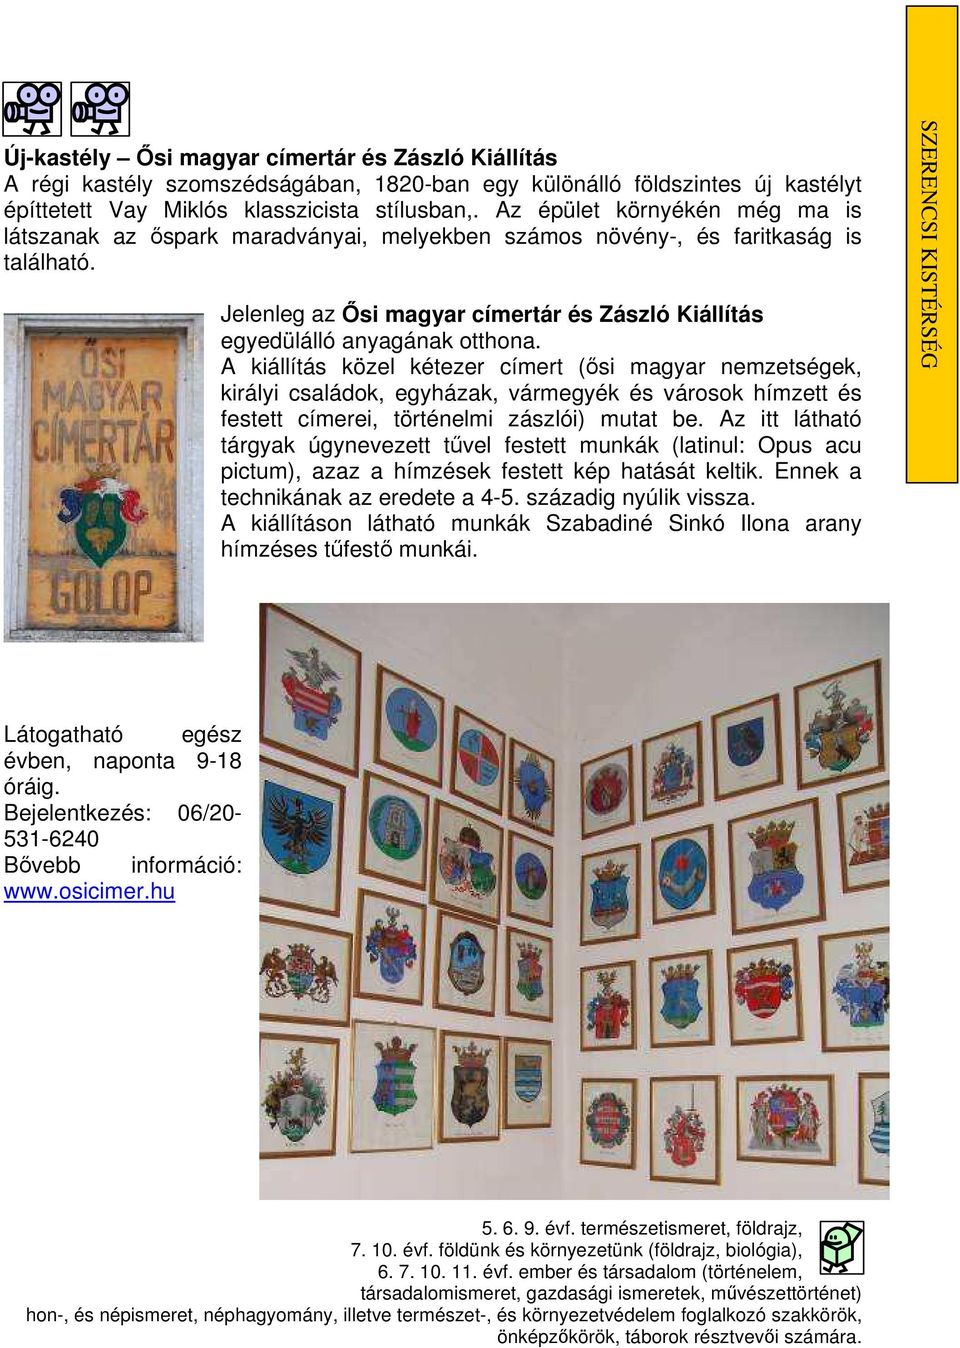 A kiállítás közel kétezer címert (ısi magyar nemzetségek, királyi családok, egyházak, vármegyék és városok hímzett és festett címerei, történelmi zászlói) mutat be.